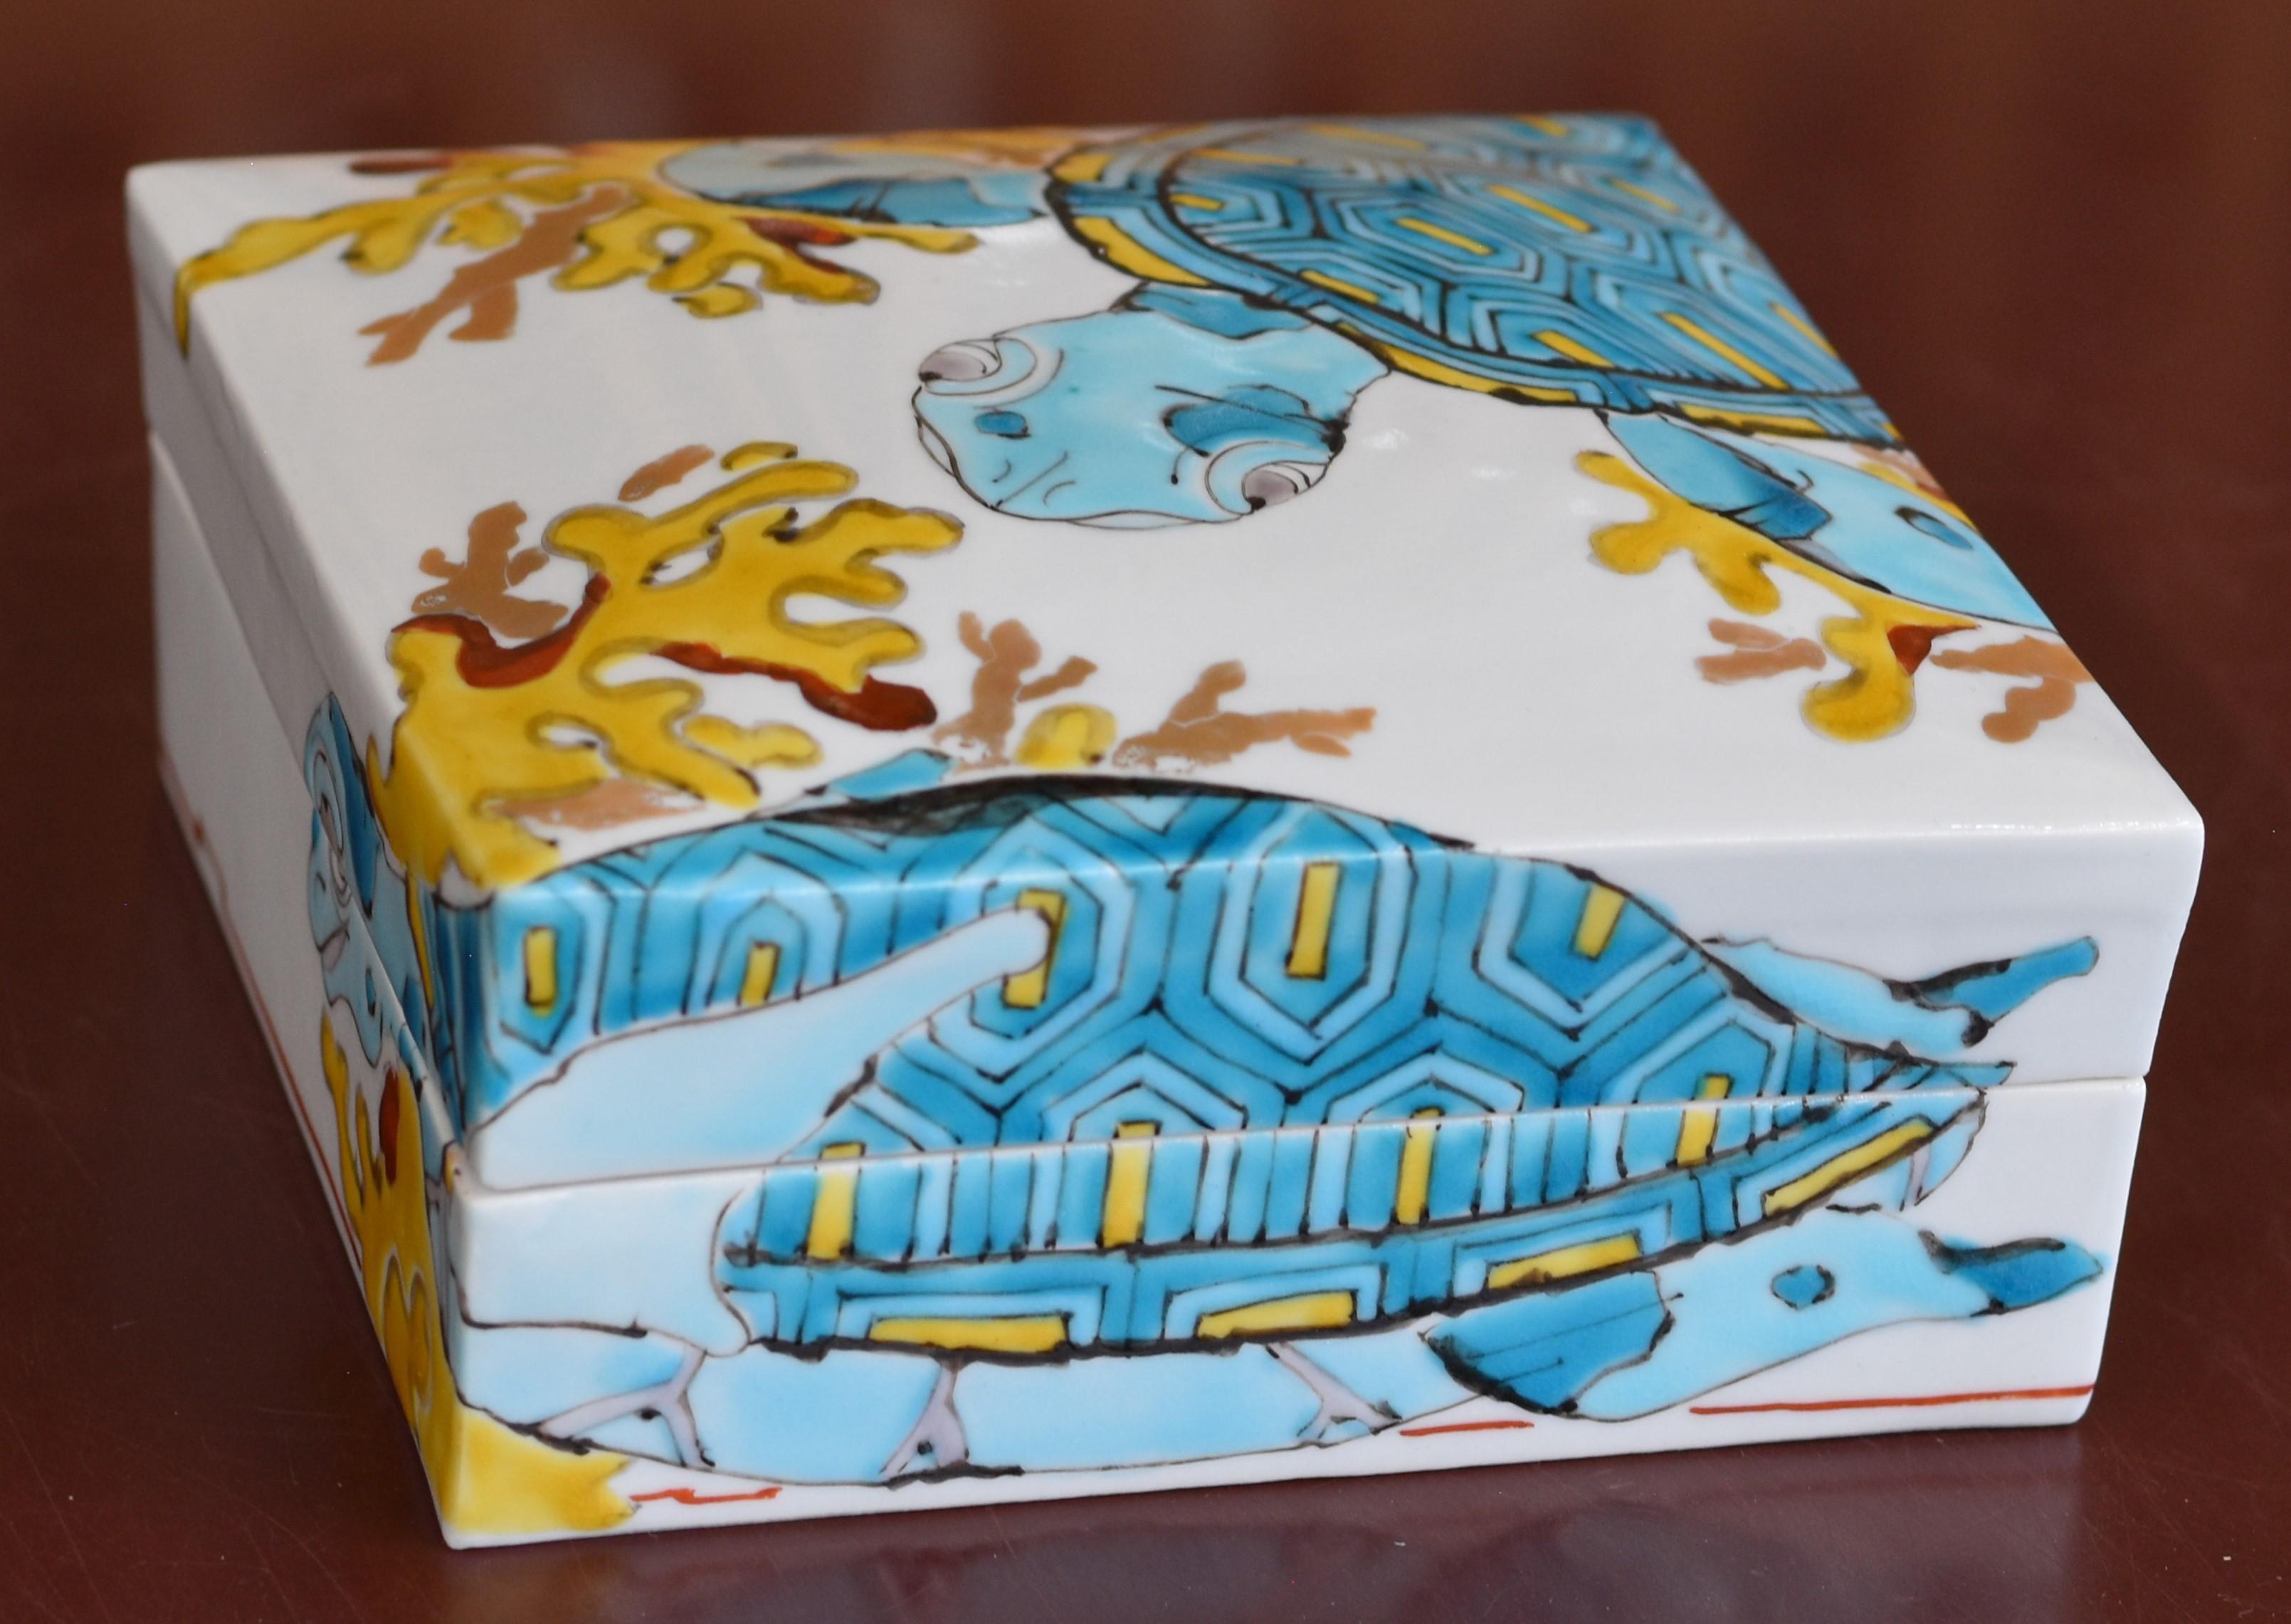 Exquisite zeitgenössische japanische Porzellanvase in Museumsqualität, handbemalt auf einem eleganten quadratischen Korpus in leuchtenden Blau-, Gelb- und Rottönen, mit einer einzigartigen Interpretation einer Meeresschildkröte. Dieser hochgelobte